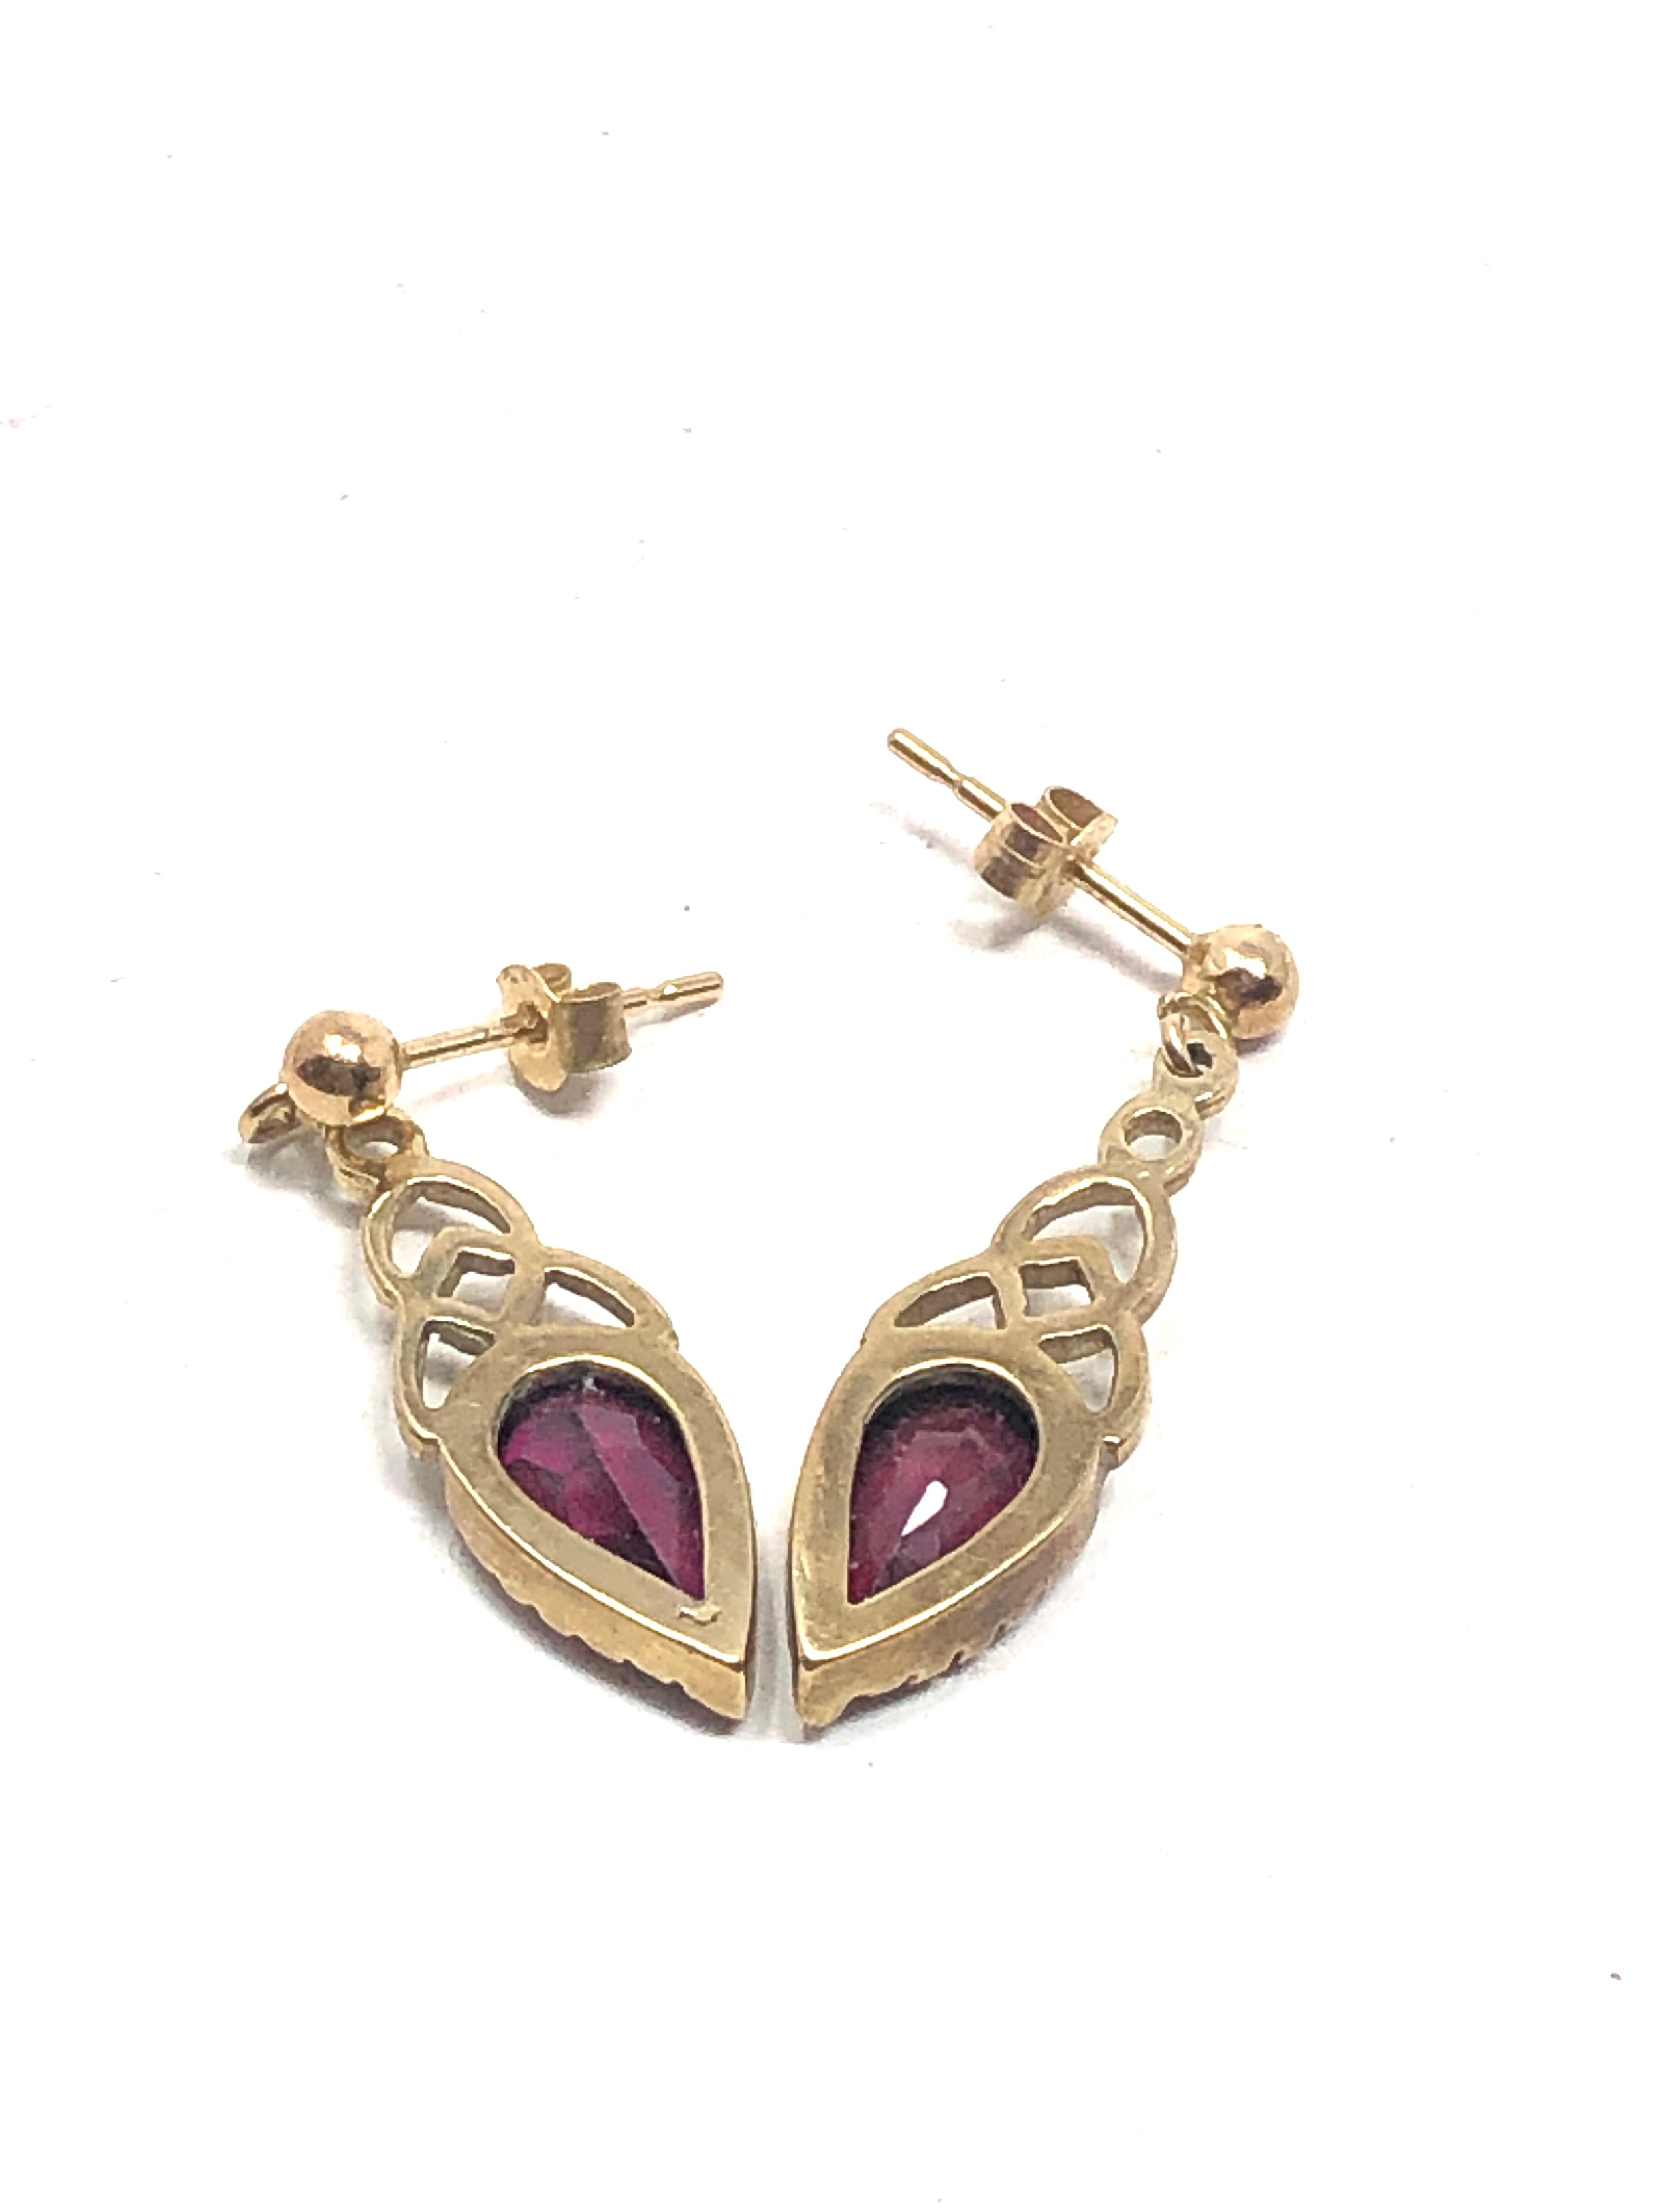 9ct gold vintage garnet openwork drop earrings (1.4g) - Image 2 of 2